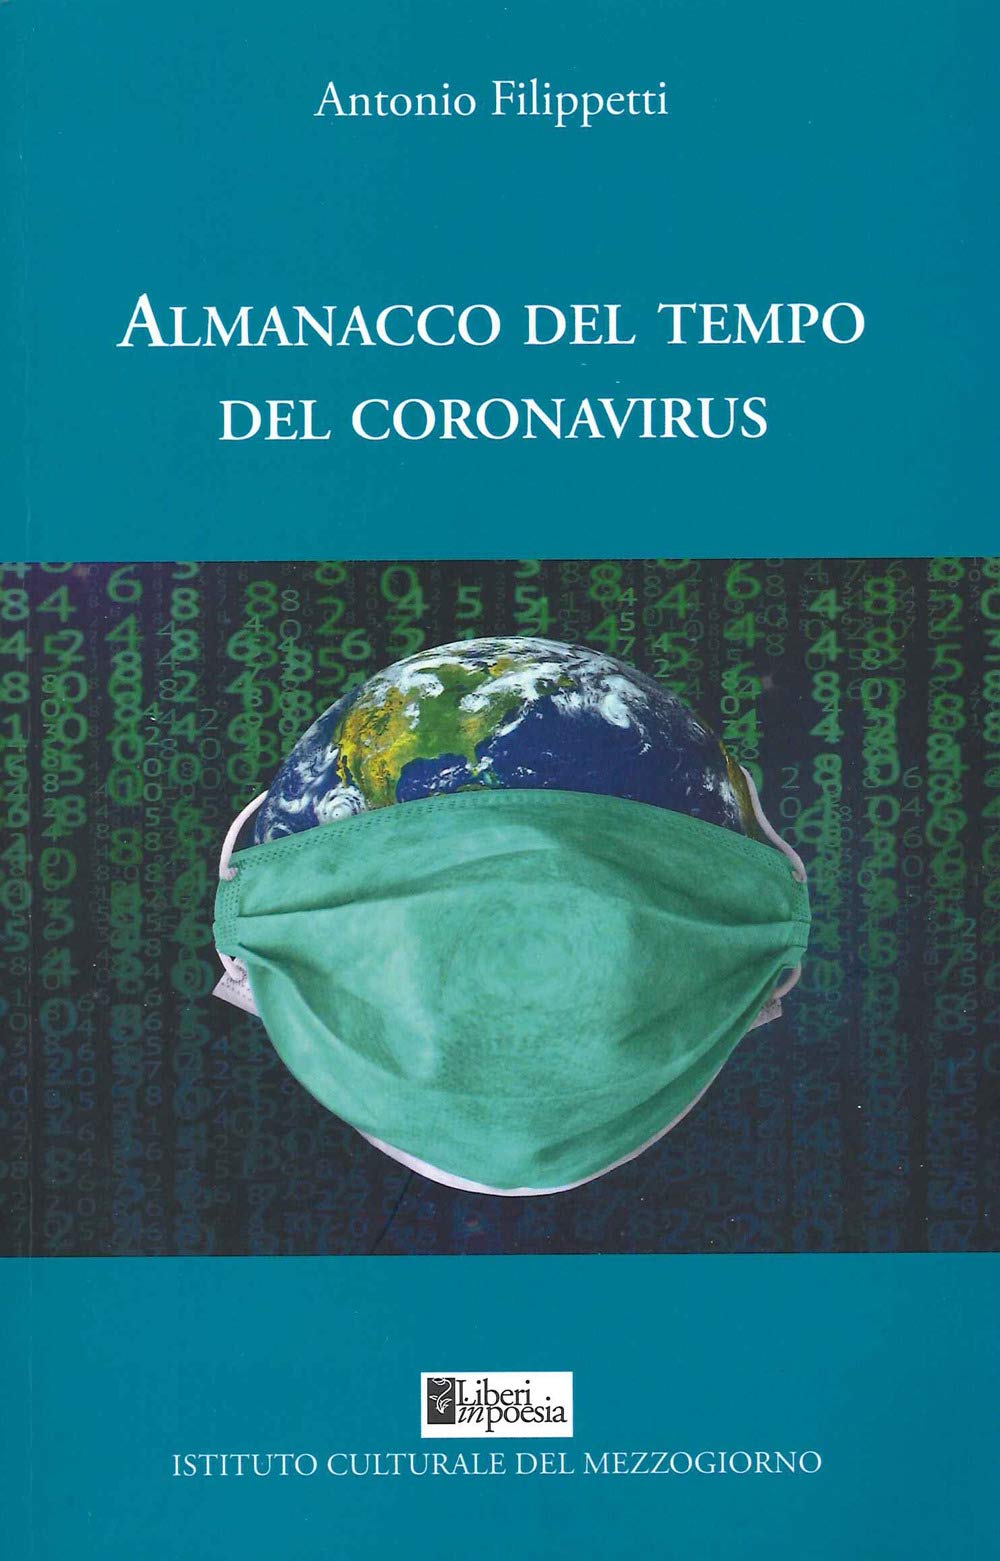 “Almanacco del tempo del coronavirus” di Antonio Filippetti- Vieni avanti, infettivo